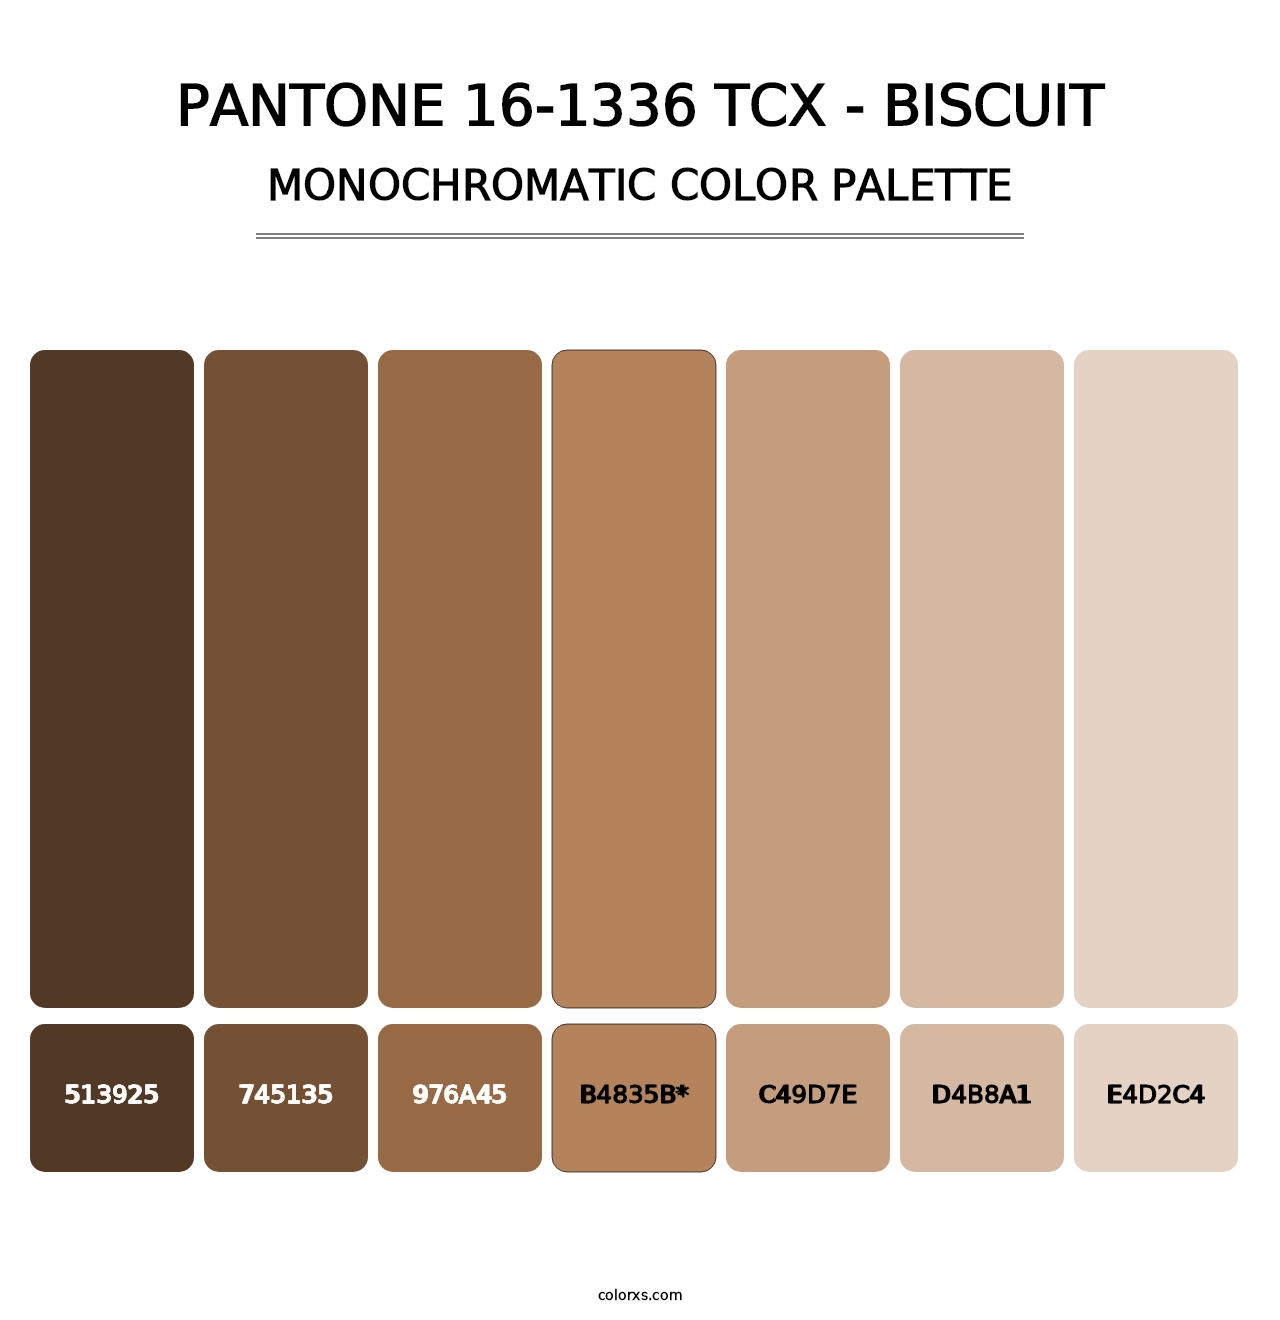 PANTONE 16-1336 TCX - Biscuit - Monochromatic Color Palette